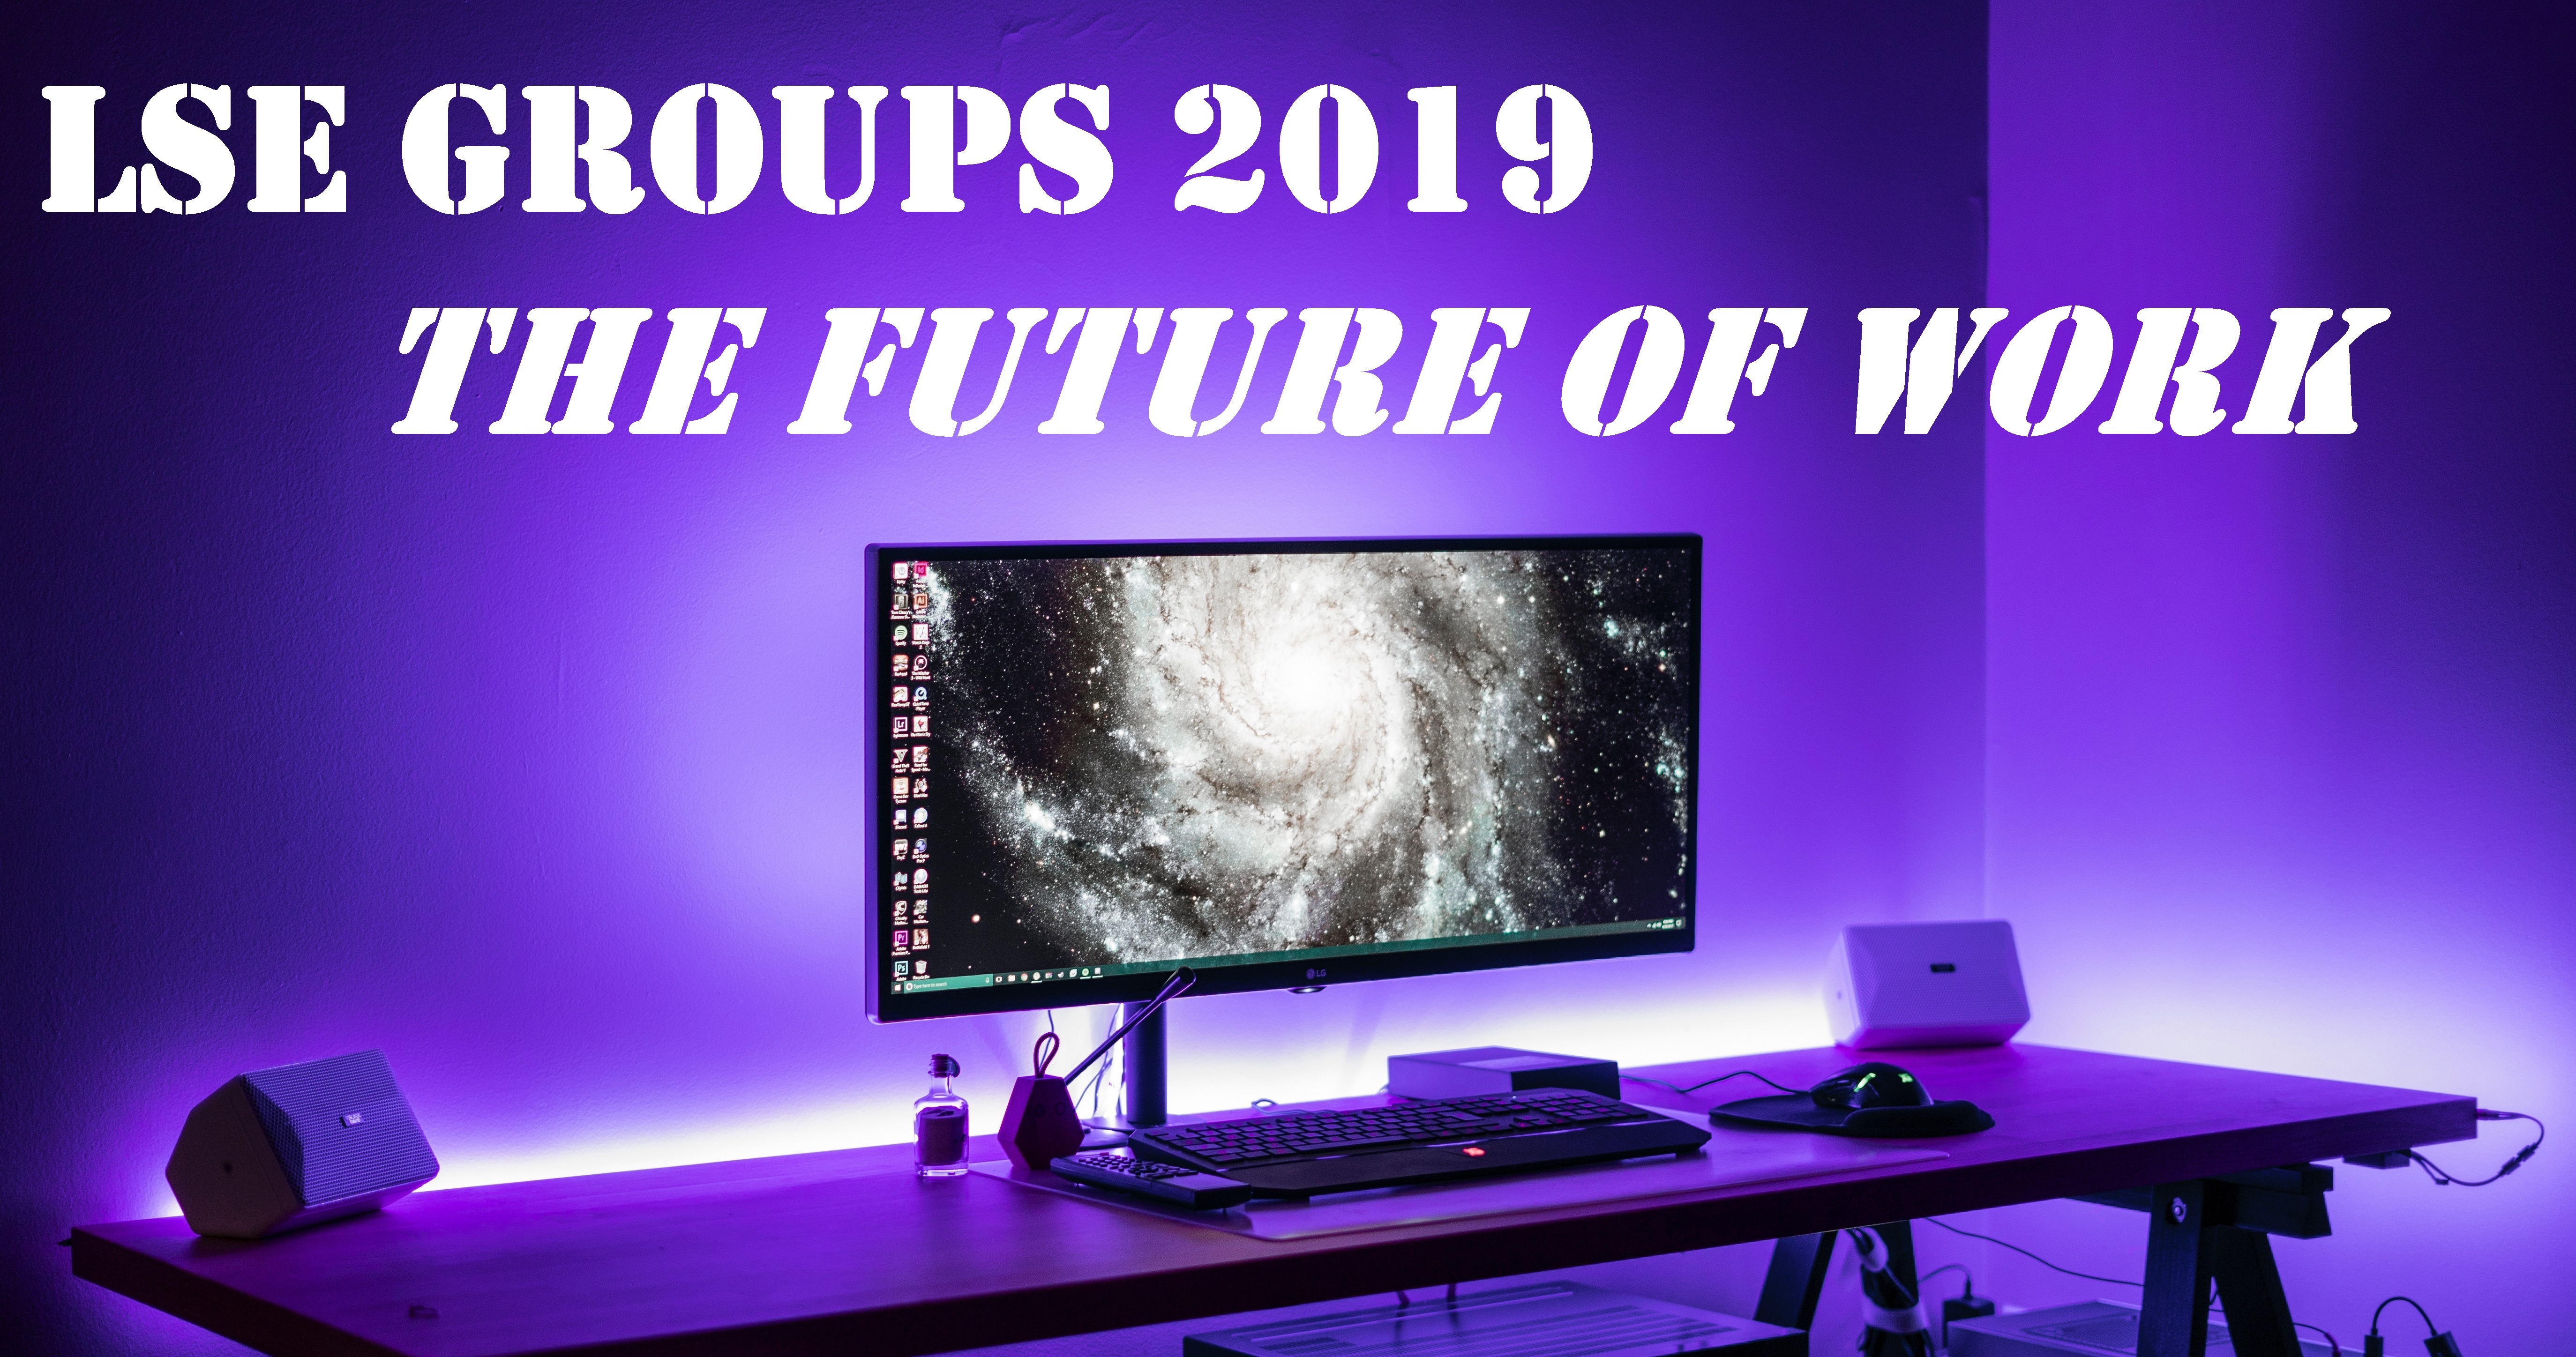 LSE GROUPS 2019 - banner (sans details) for newsletter - March 2019